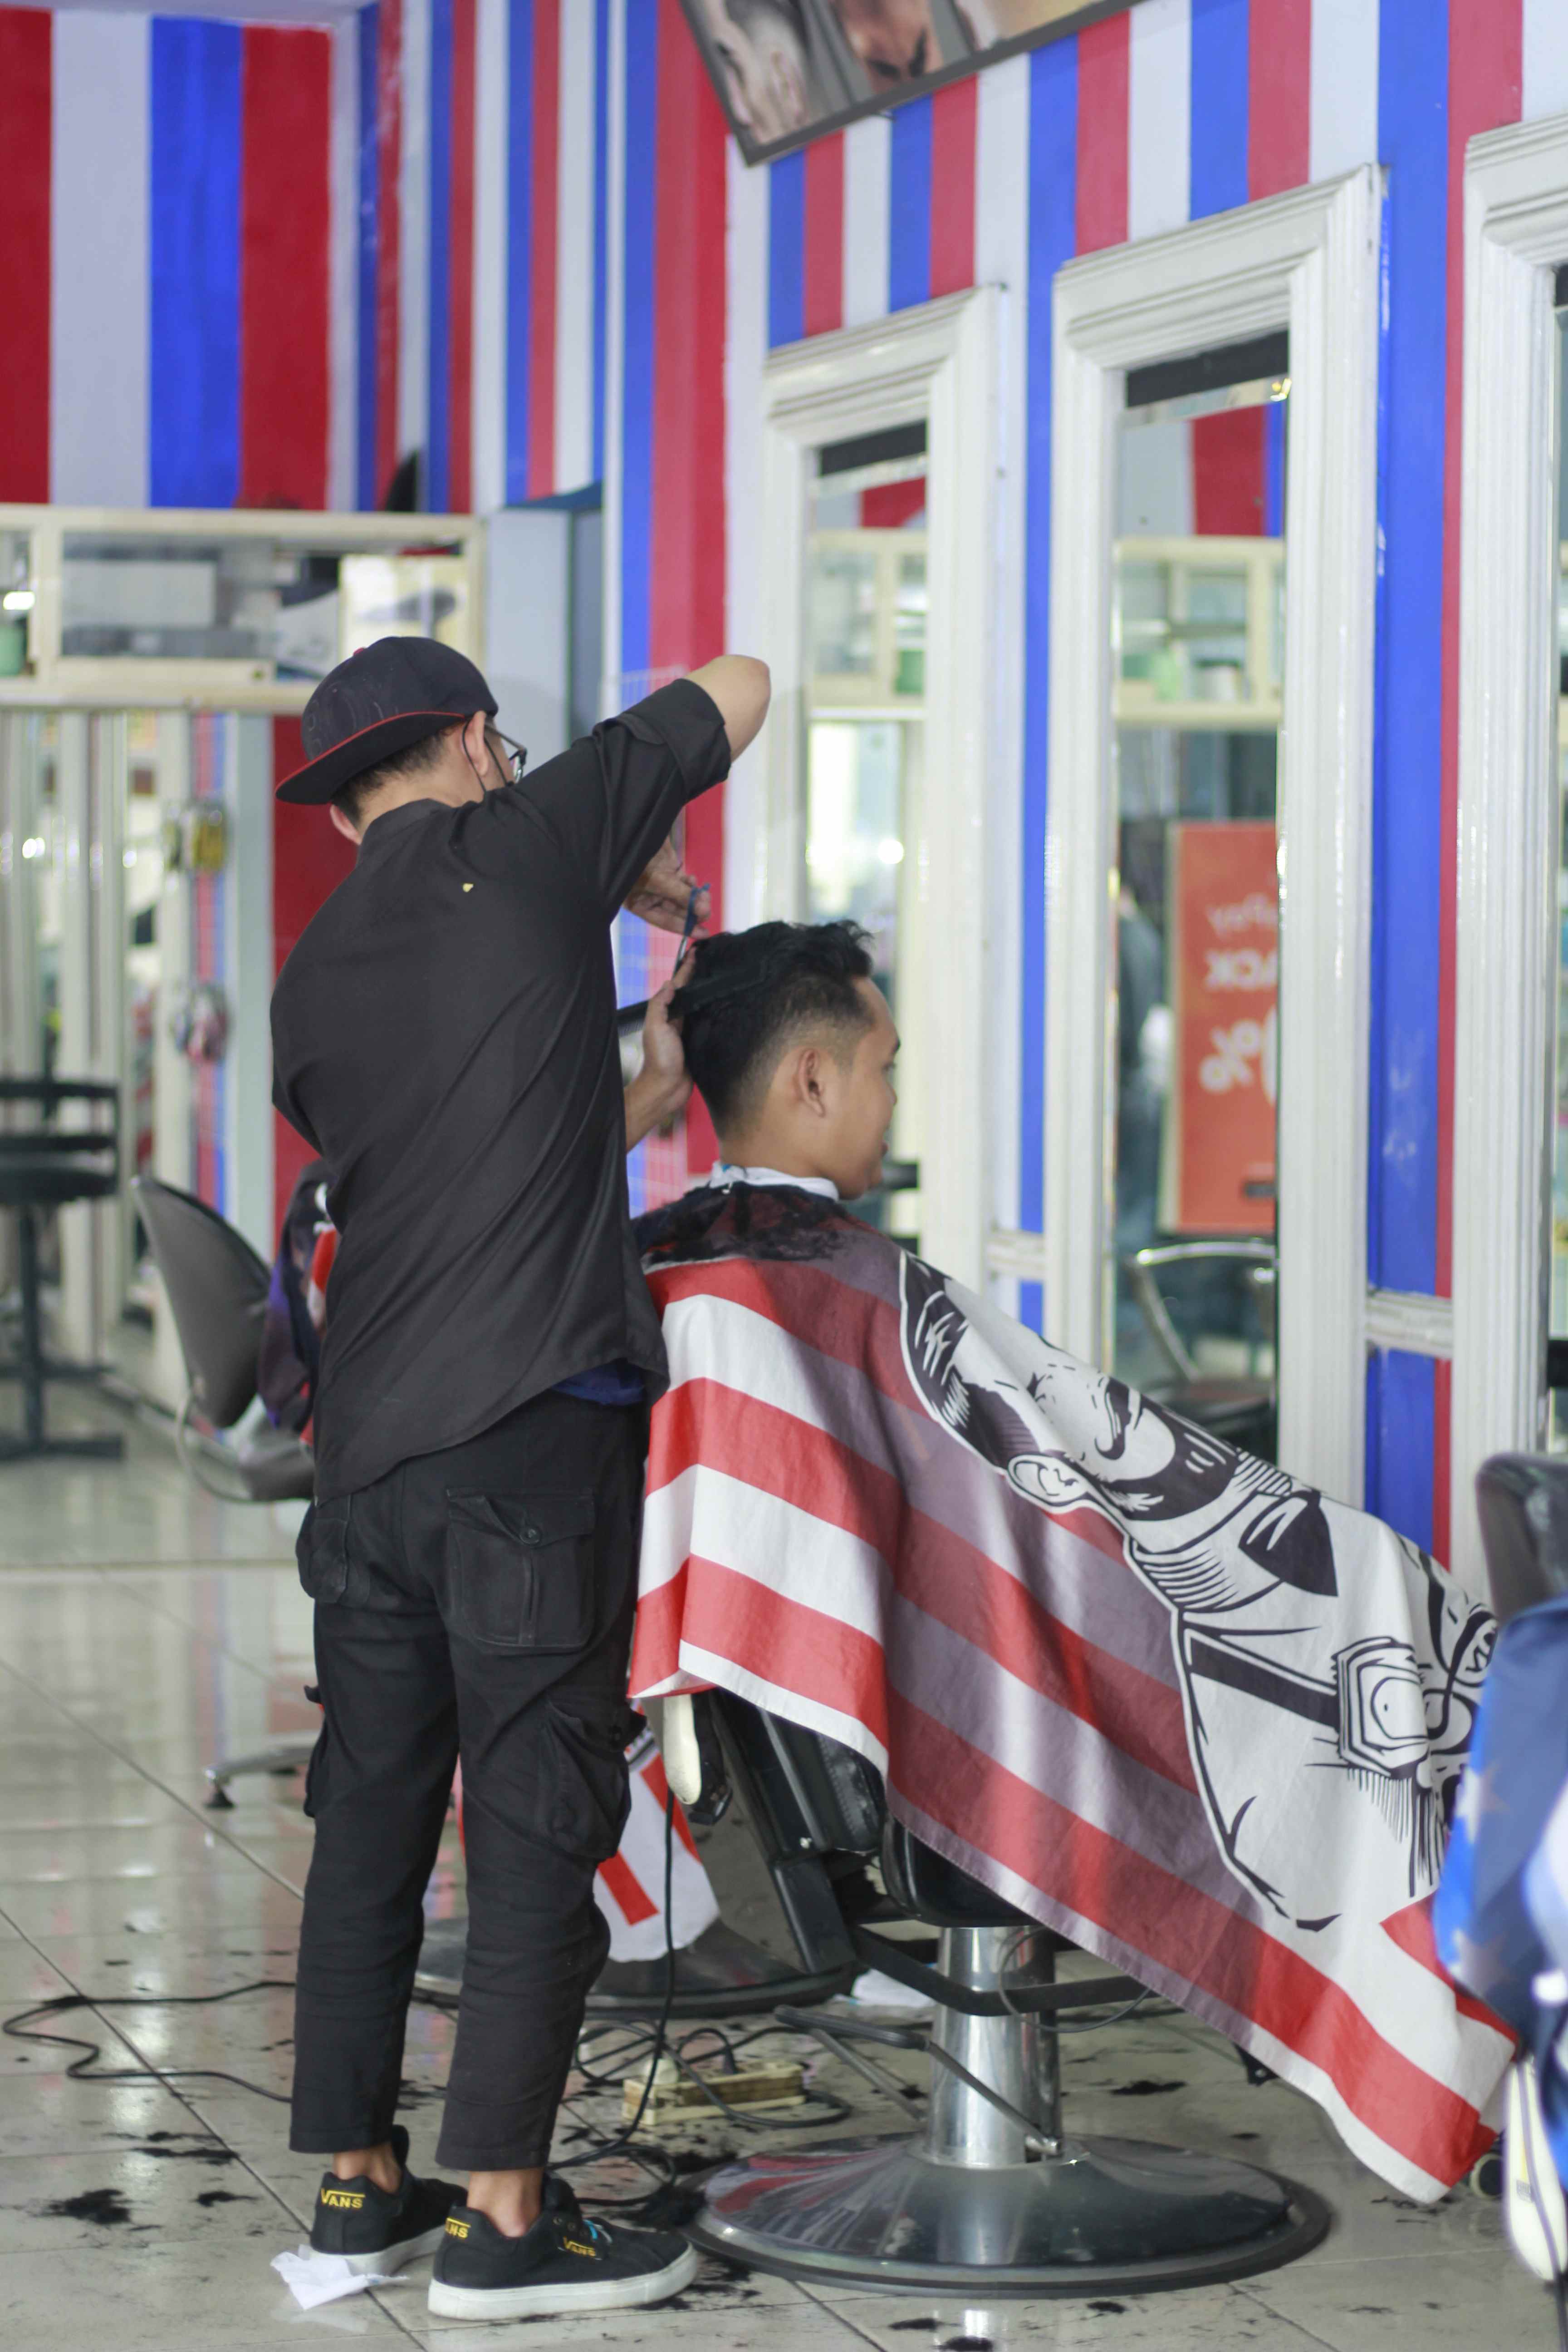 Tempat Barbershop Di Kecamatan Blimbing Murah